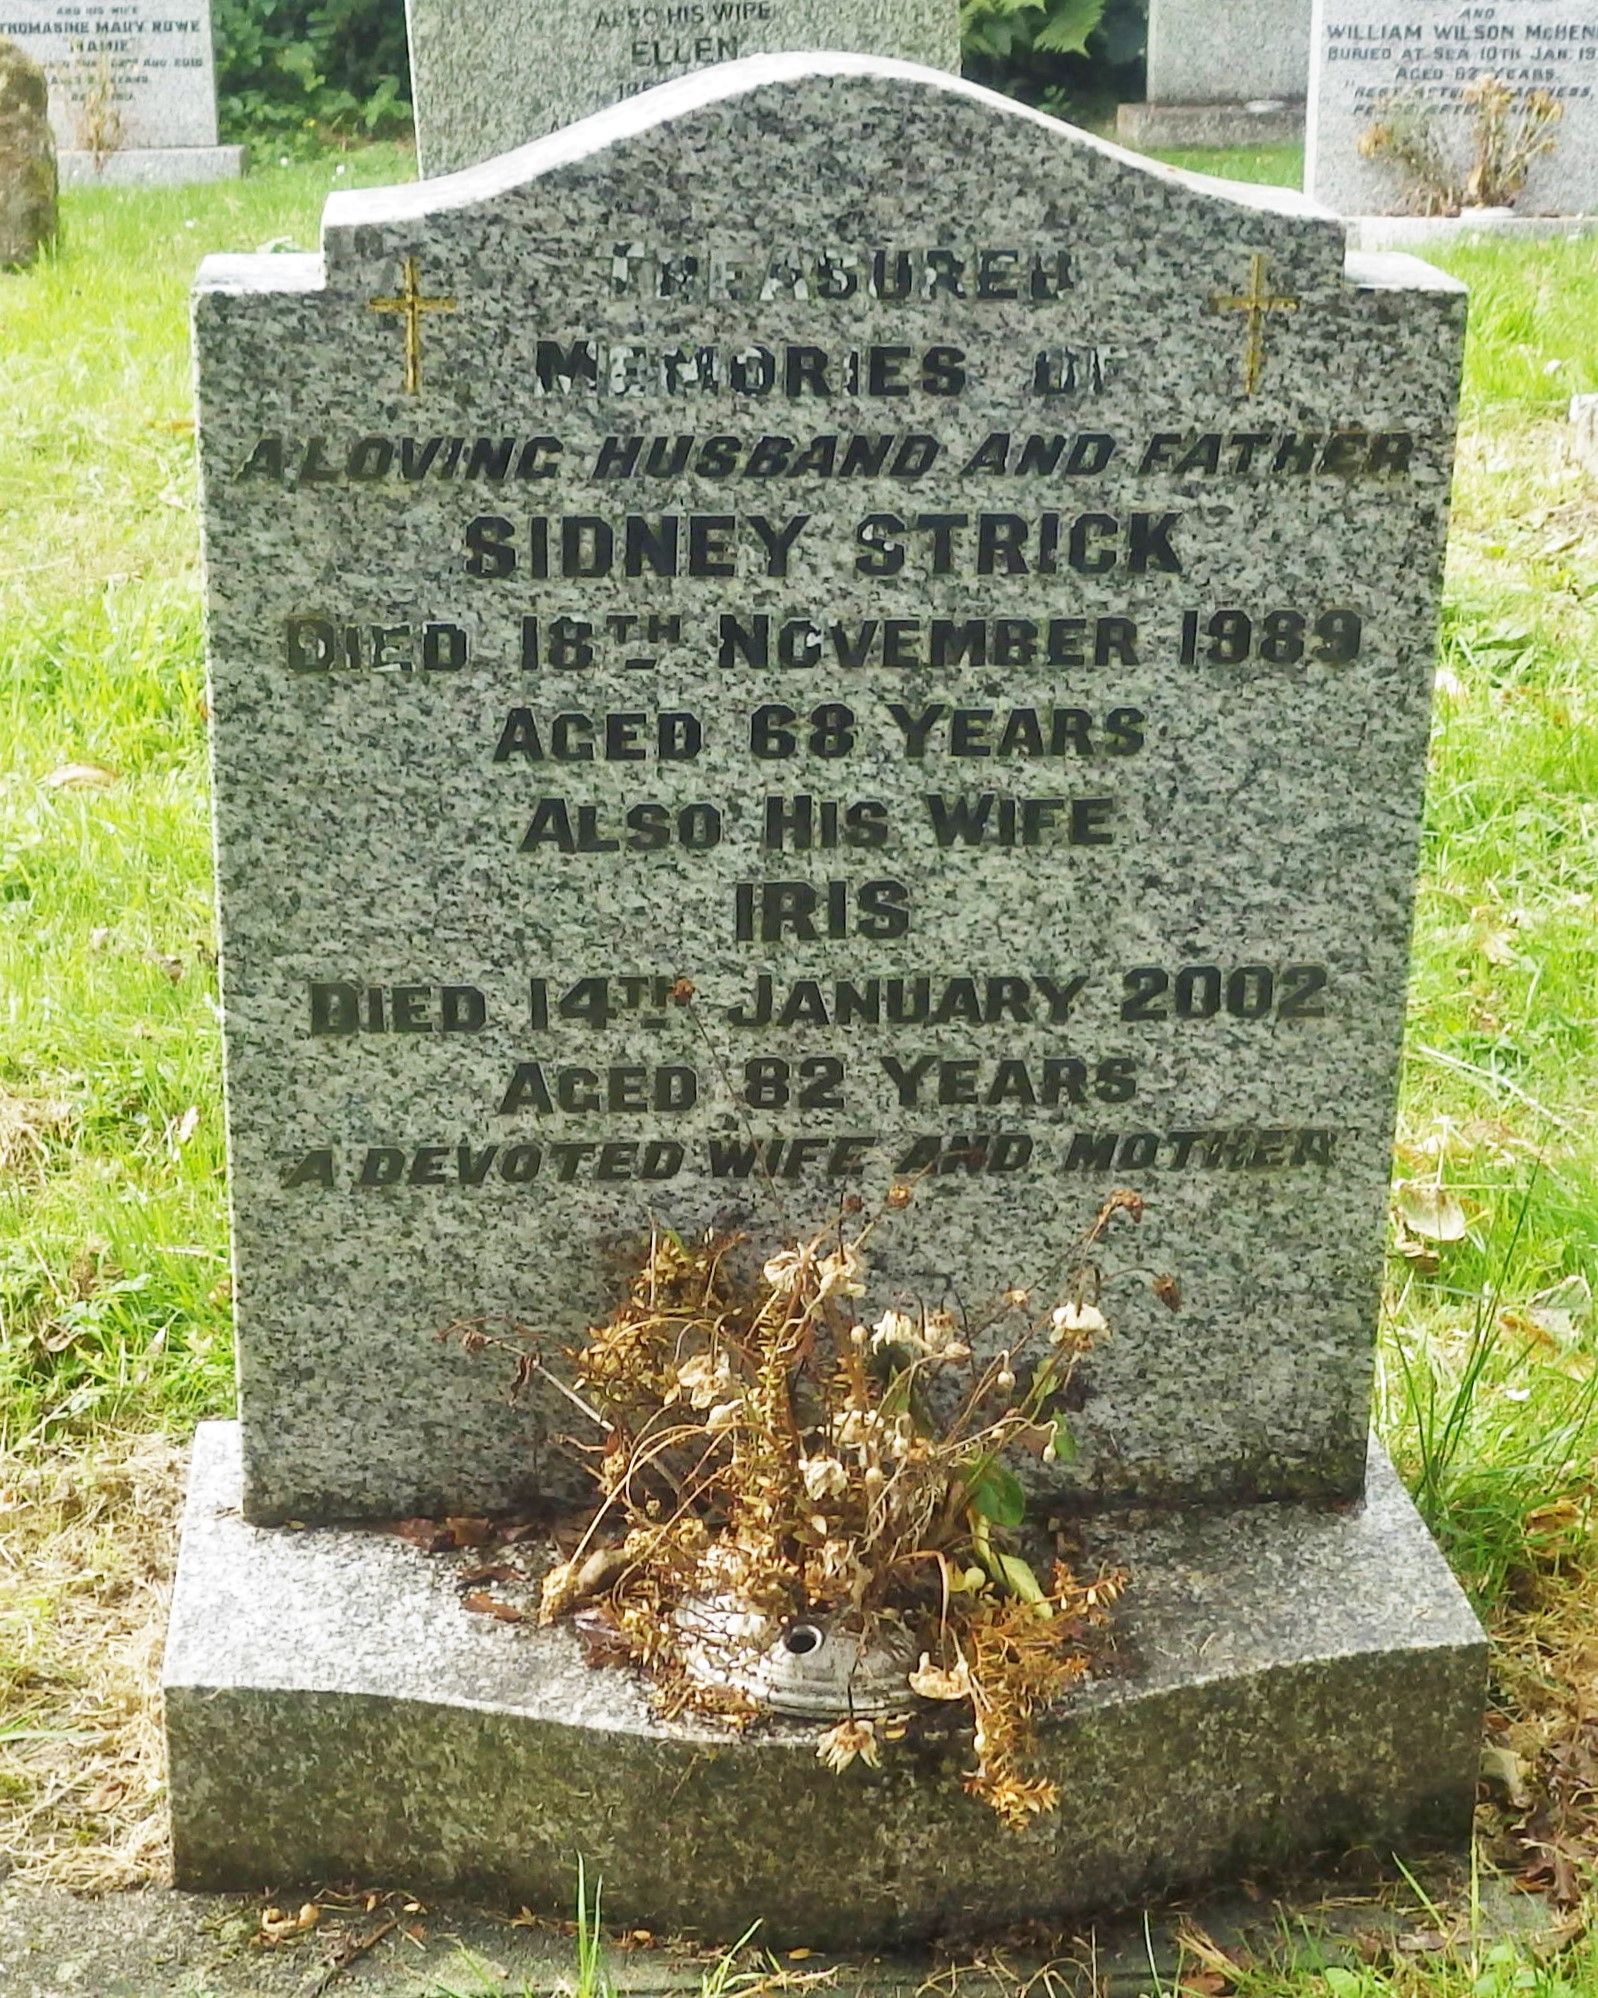 Sid Strick memorial